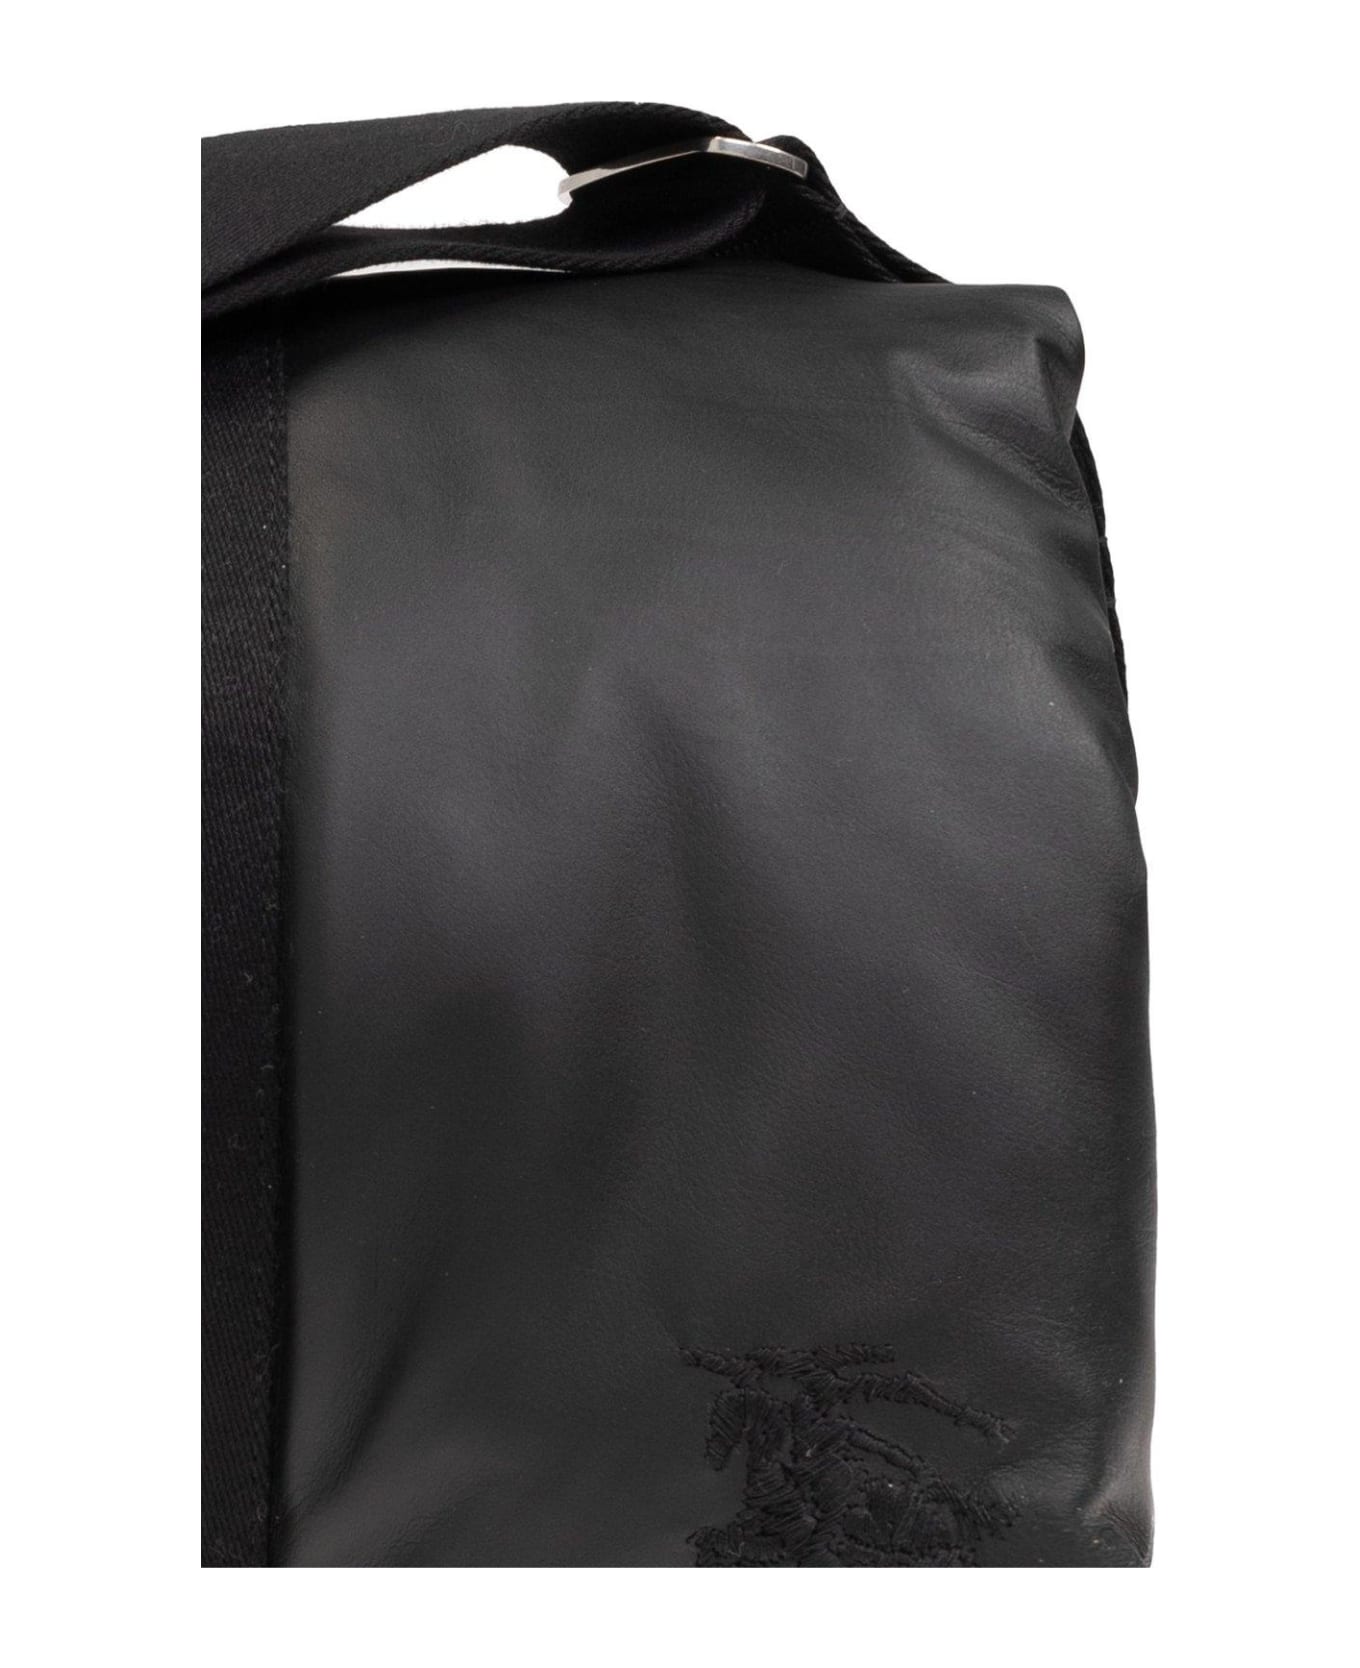 Burberry Pillow Foldover-top Padded Messenger Bag - BLACK